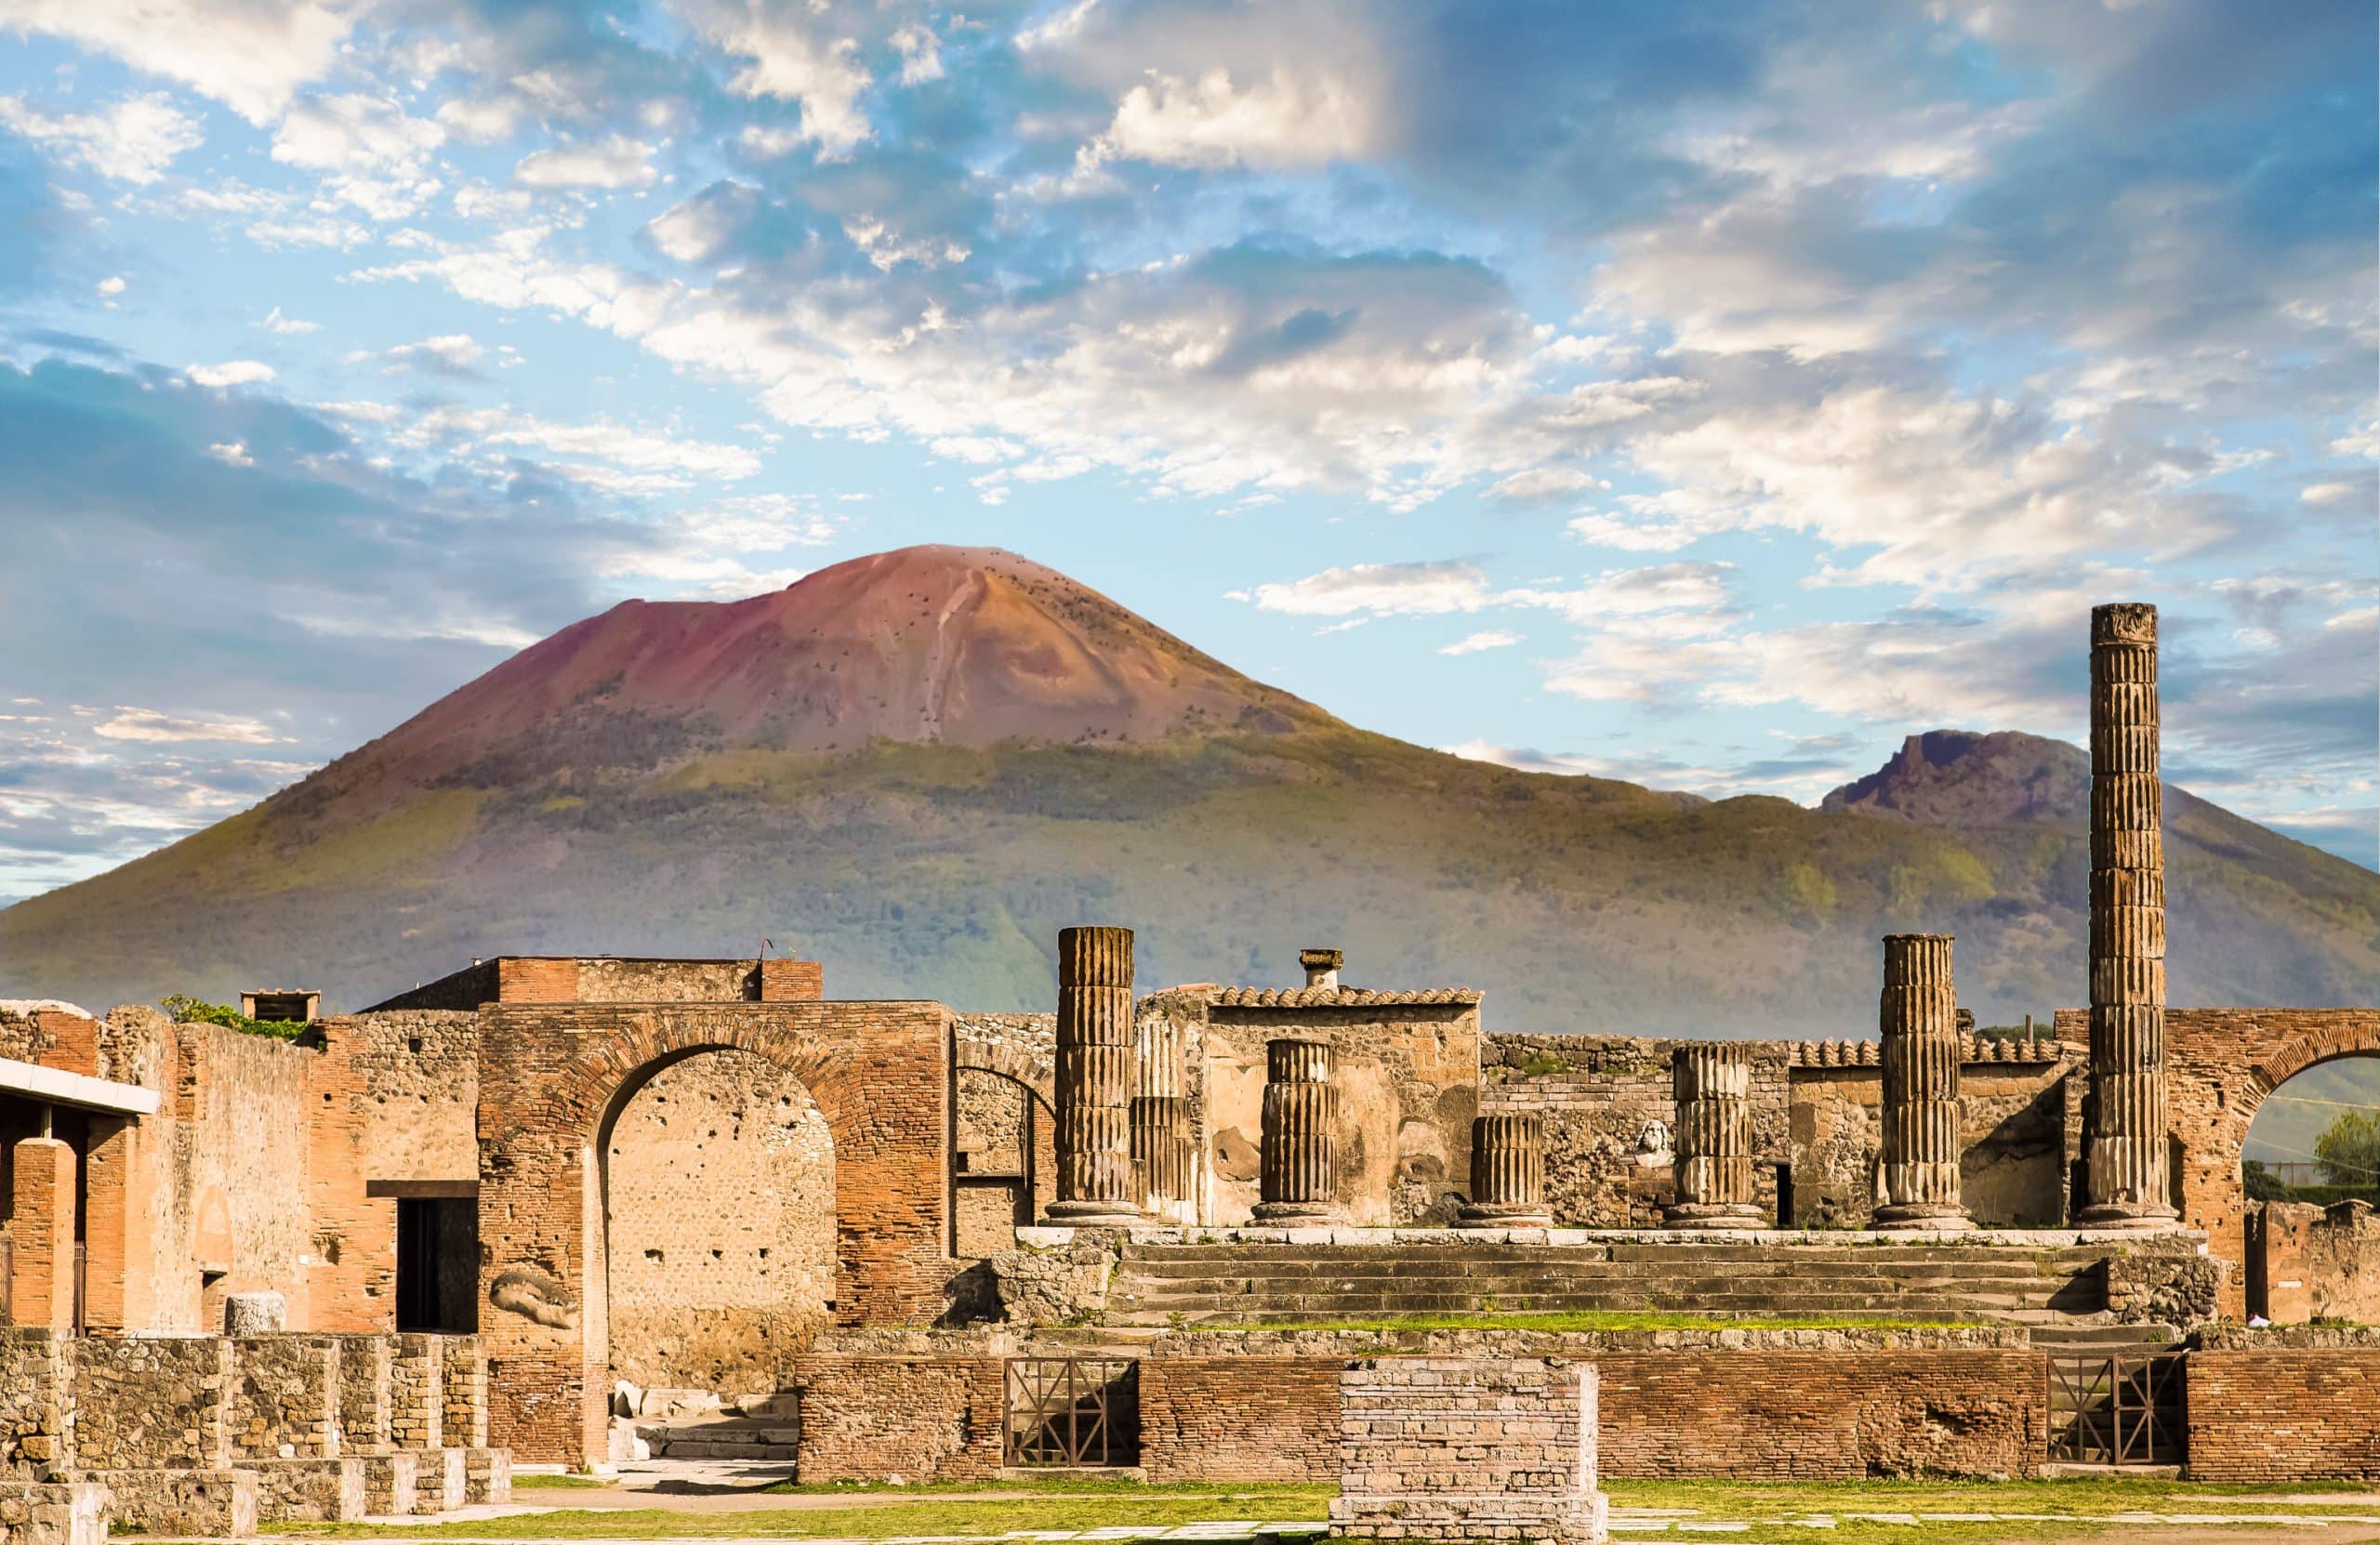 İtalya’da bulunan Pompeii antik kentinin sırrı çözüldü!